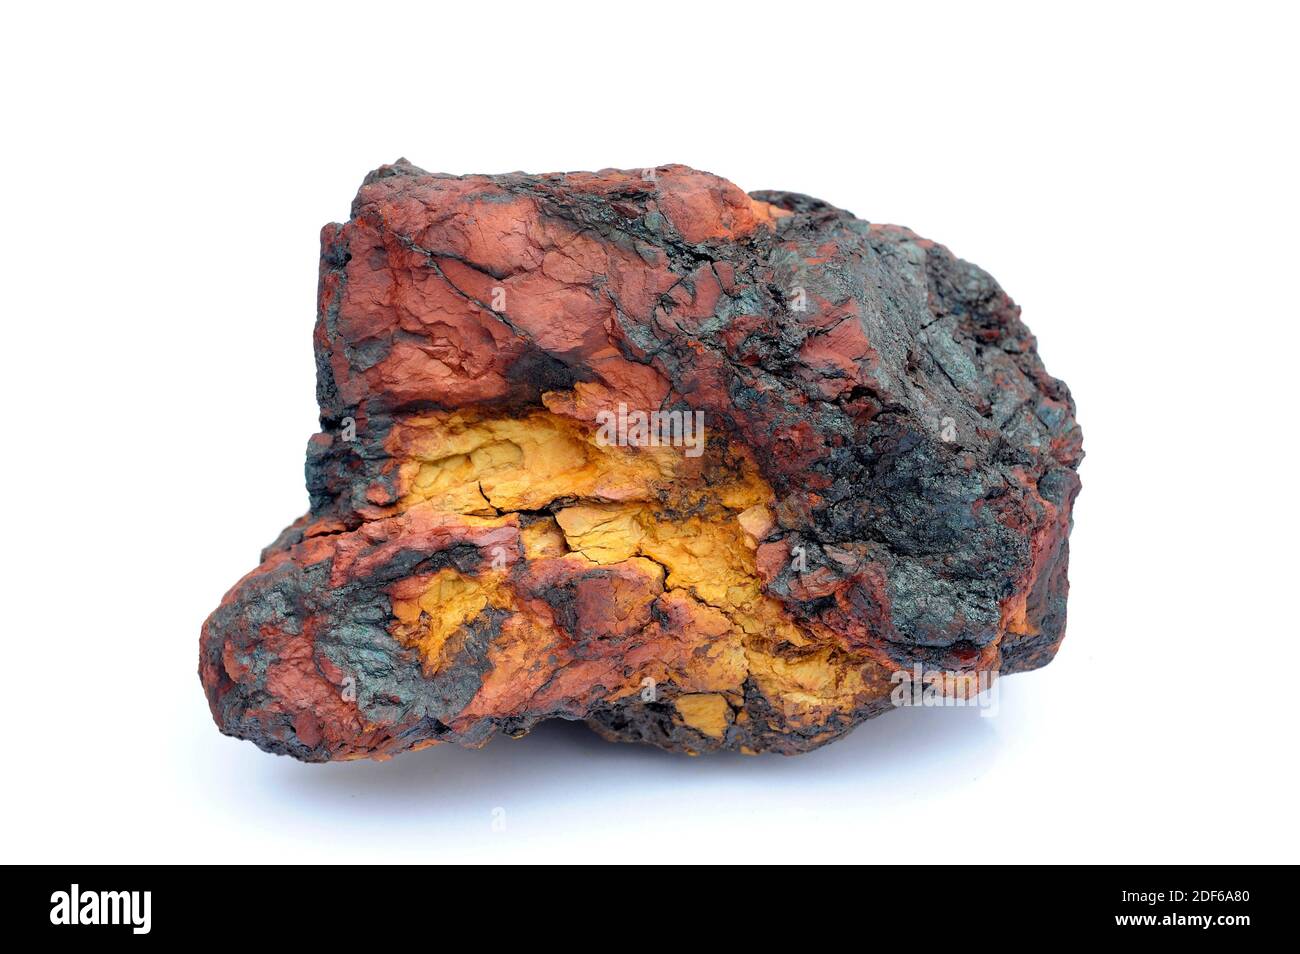 Hematite y limonita. La hematita o hematita es un mineral compuesto por  óxido de hierro; la limonita está formada por hidroxida de hierro. Ambos  son mineral de hierro. El Fotografía de stock -